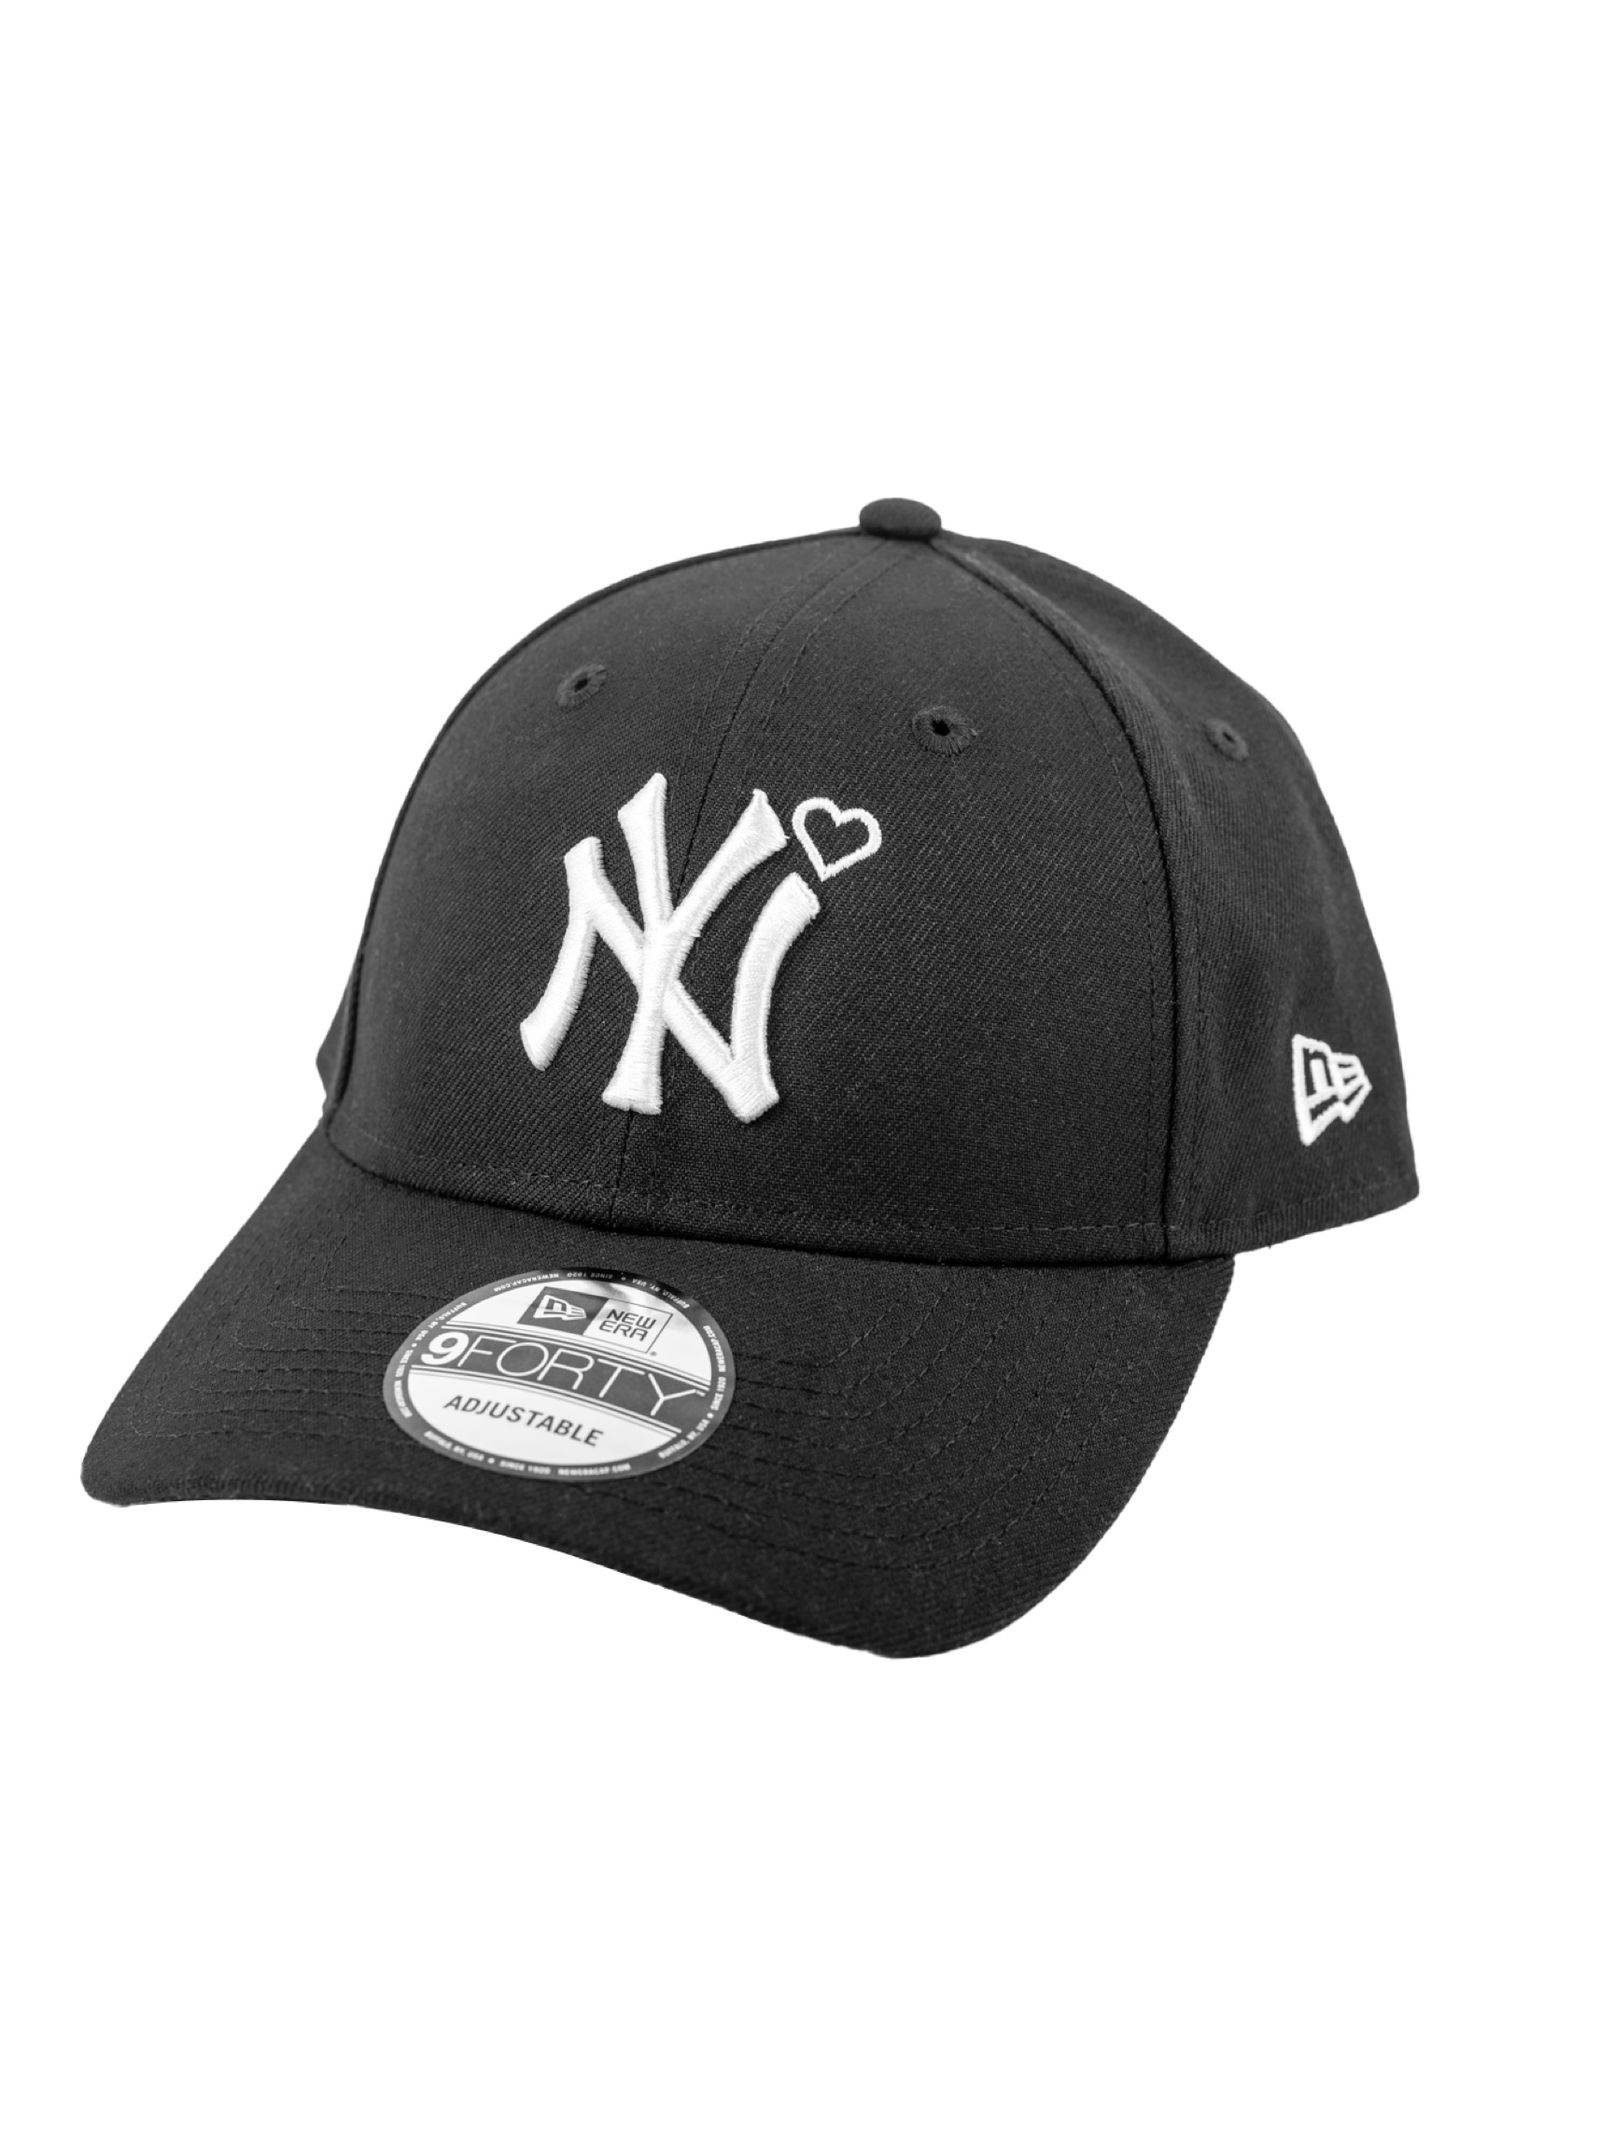 カラーホワイト×ネイビー【完売品】BASICKS 24ss newera Yankees cap